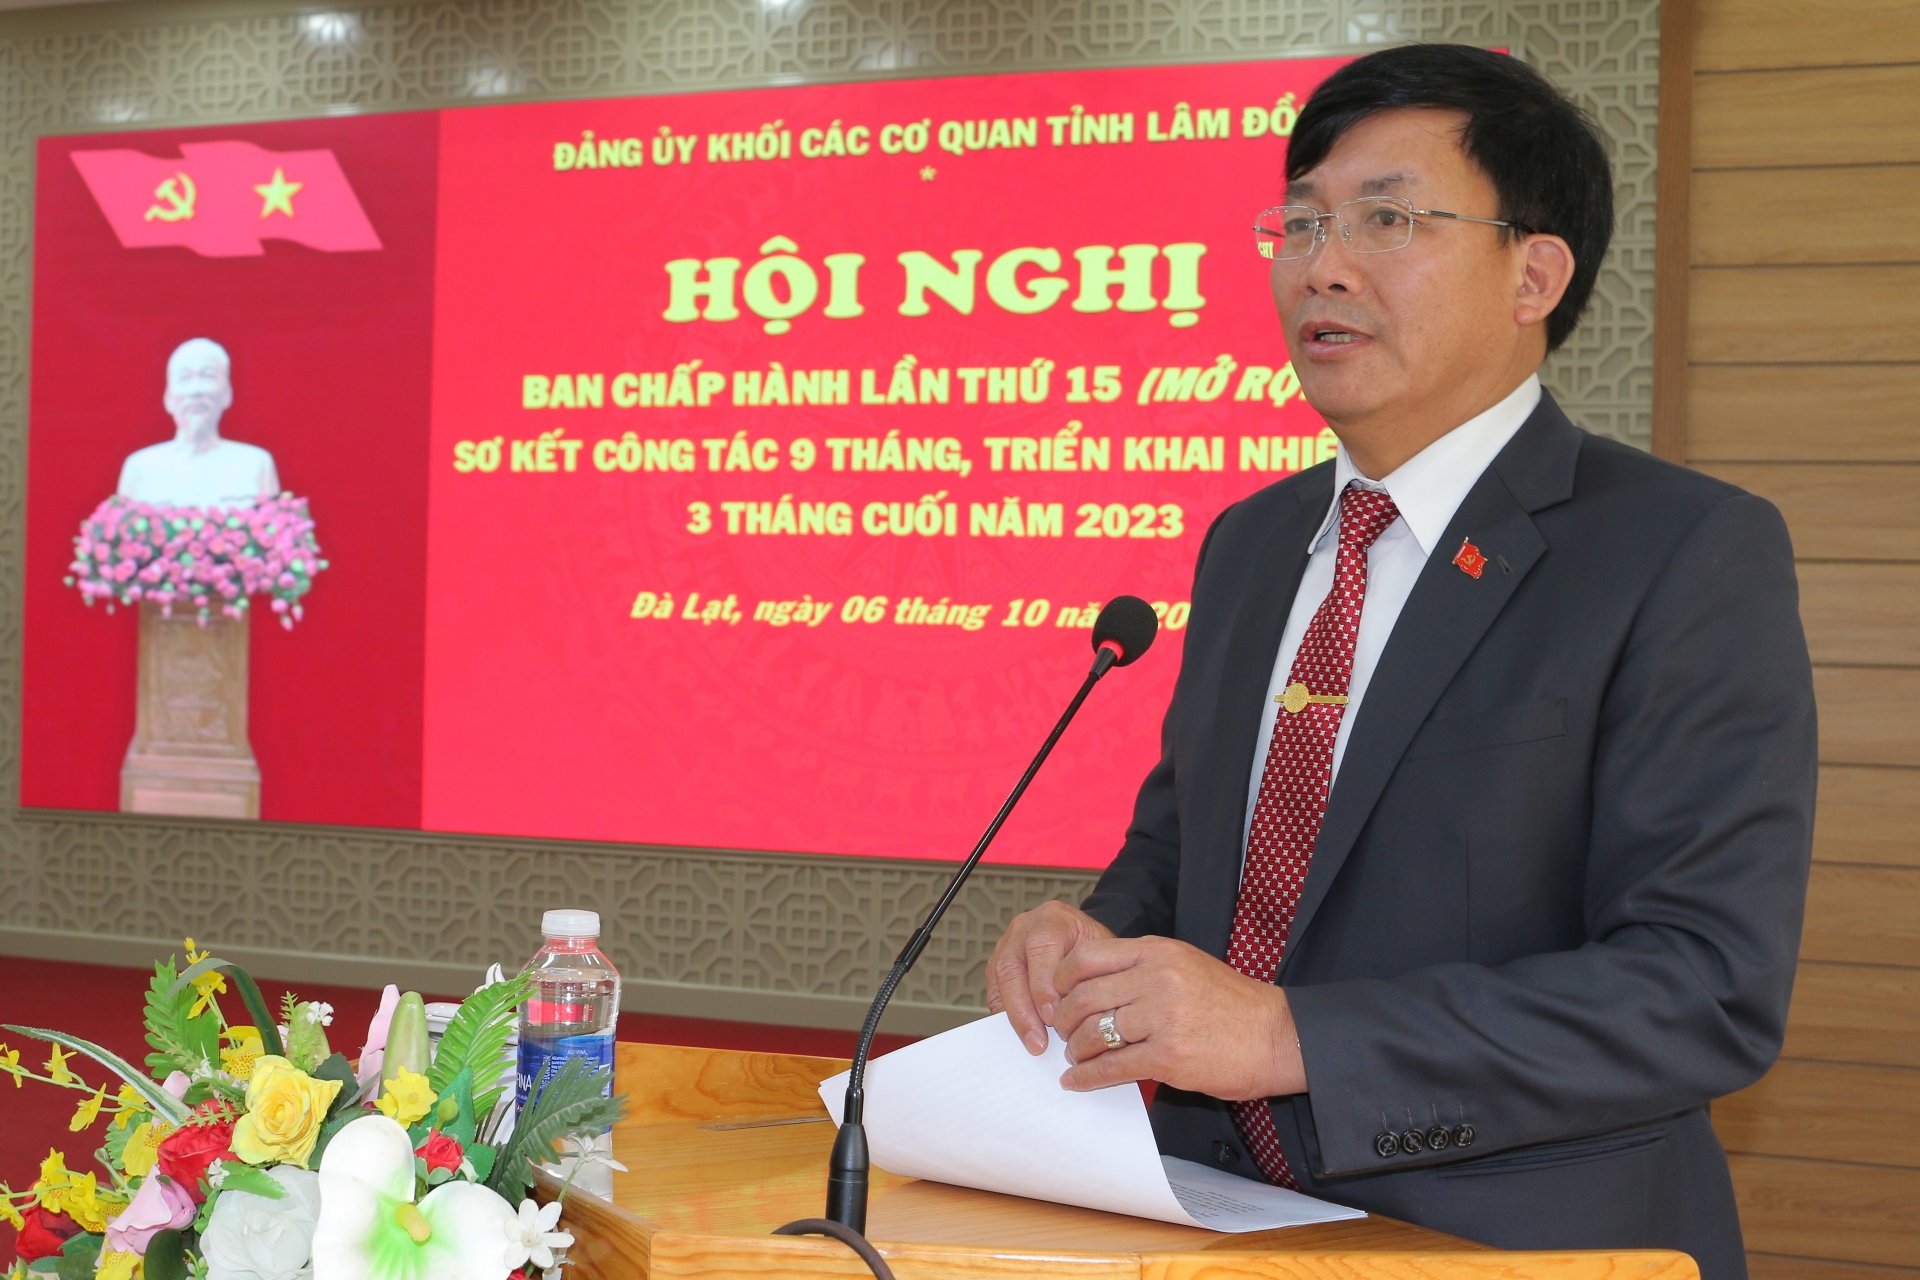 Đồng chí Hoàng Thanh Hải - Bí thư Đảng ủy Khối các cơ quan tỉnh kết luận hội nghị